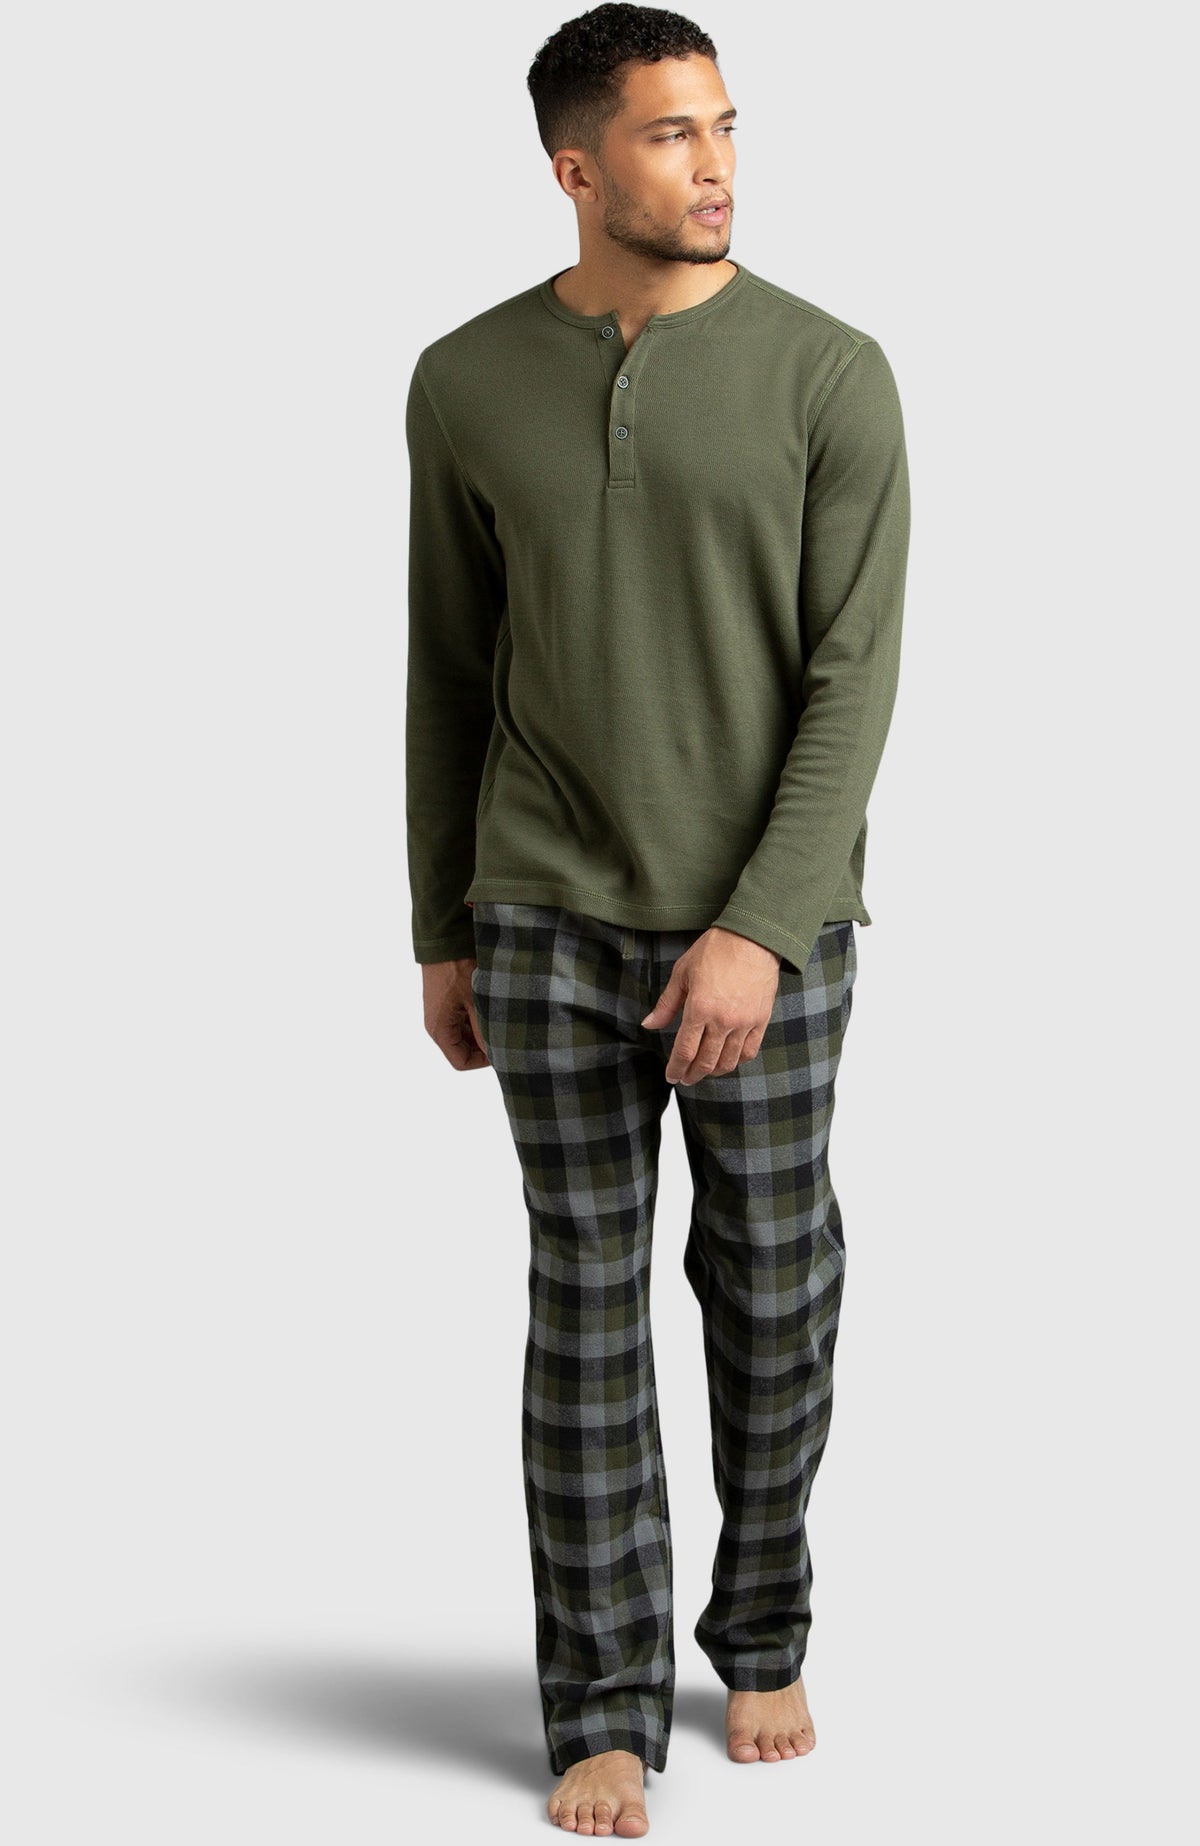 Green Flannel Pyjama for Men - Full